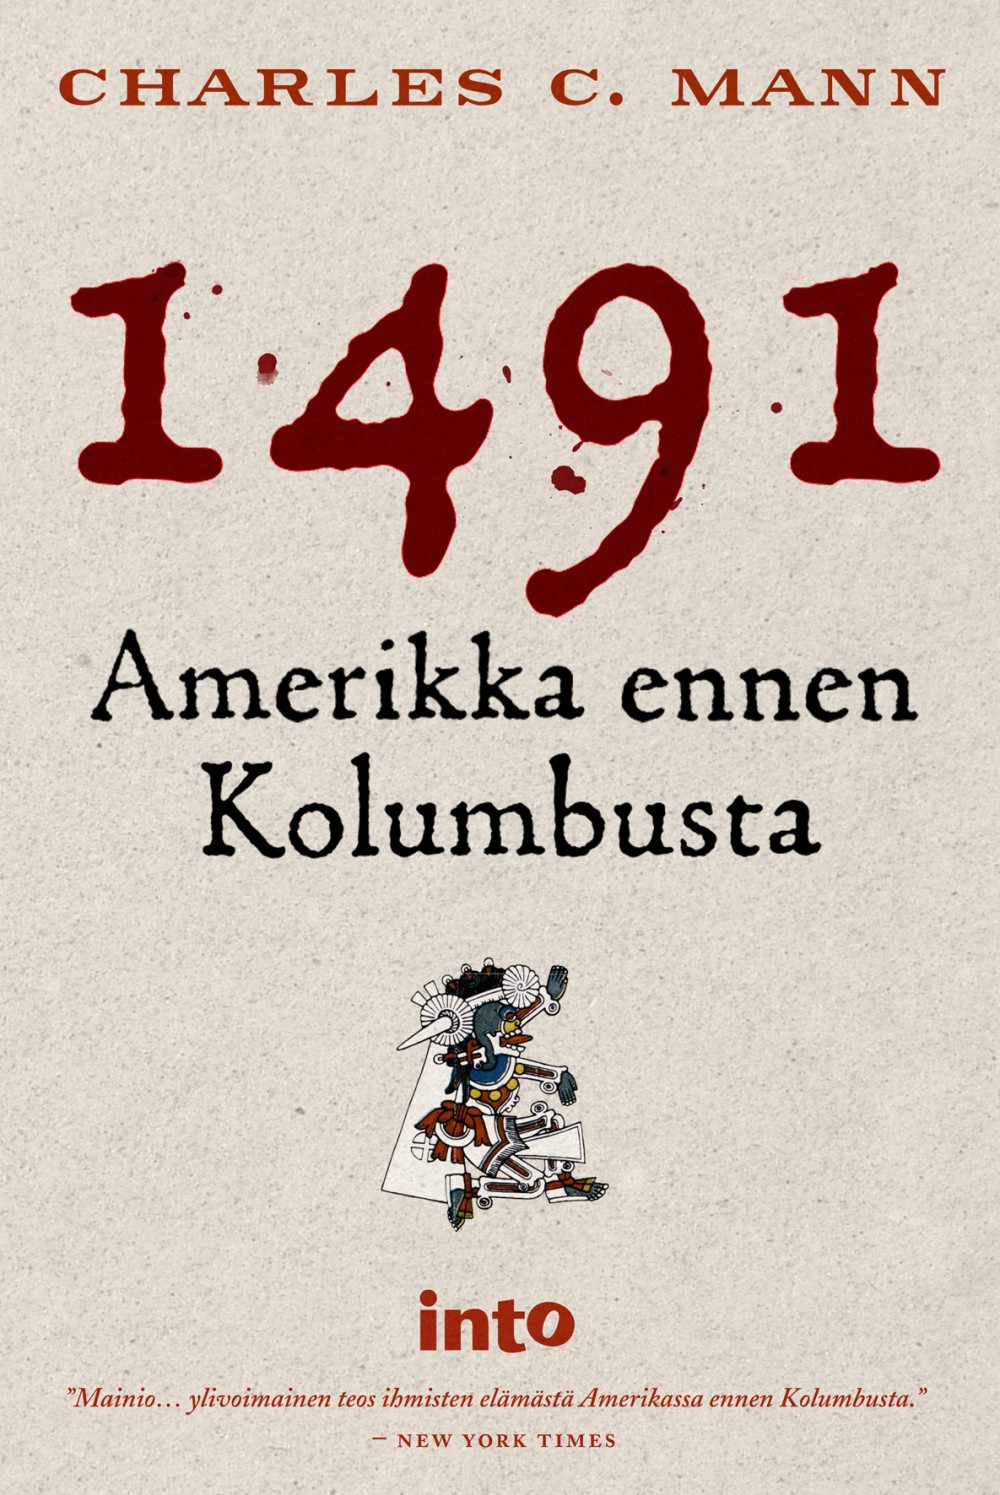 1491: Amerikka ennen Kolumbusta